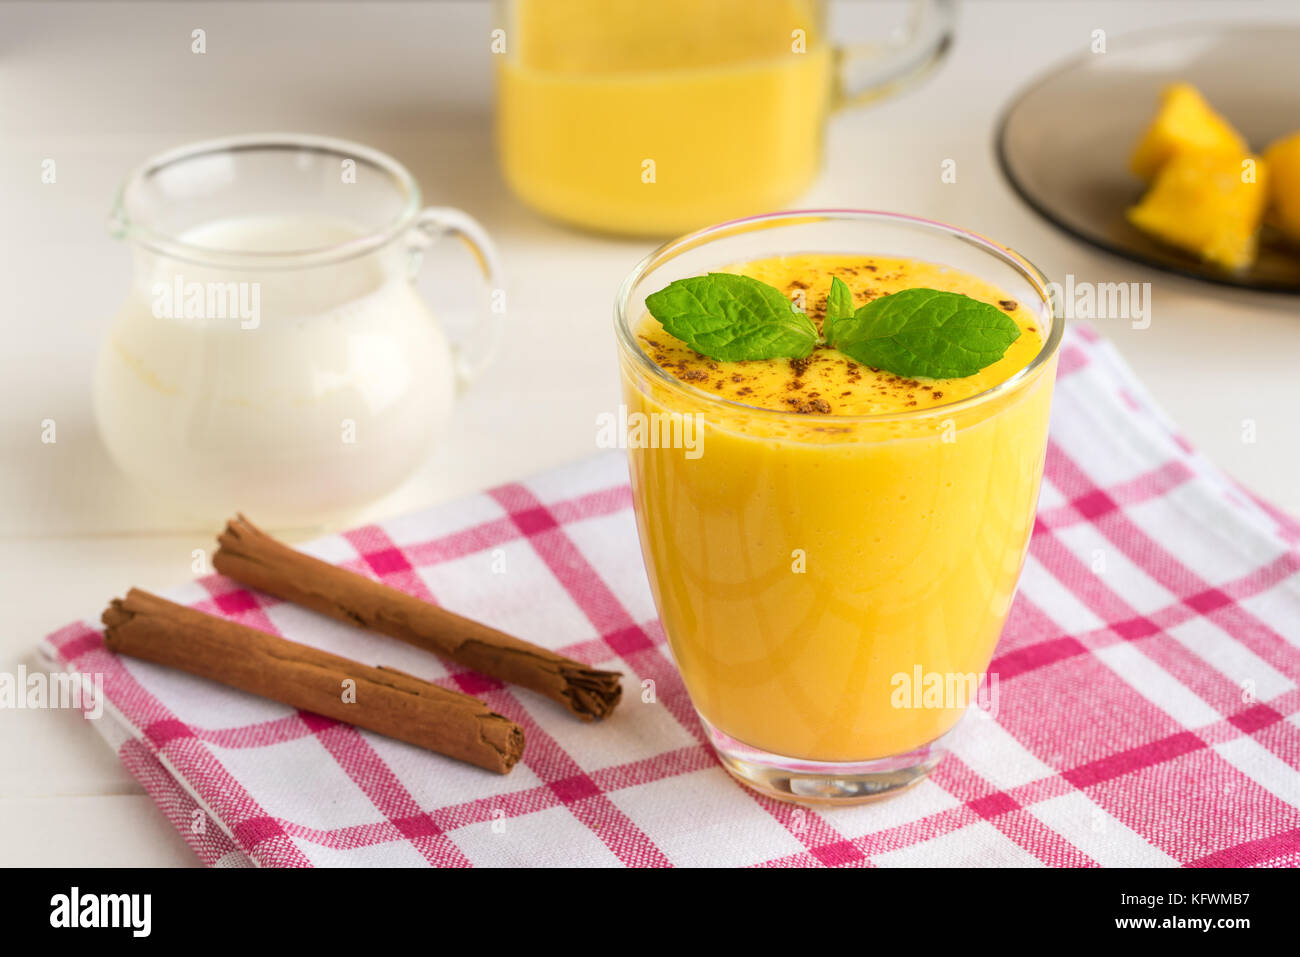 Frische mango Smoothie mit Milch, Zimt und Minze Stockfotografie - Alamy